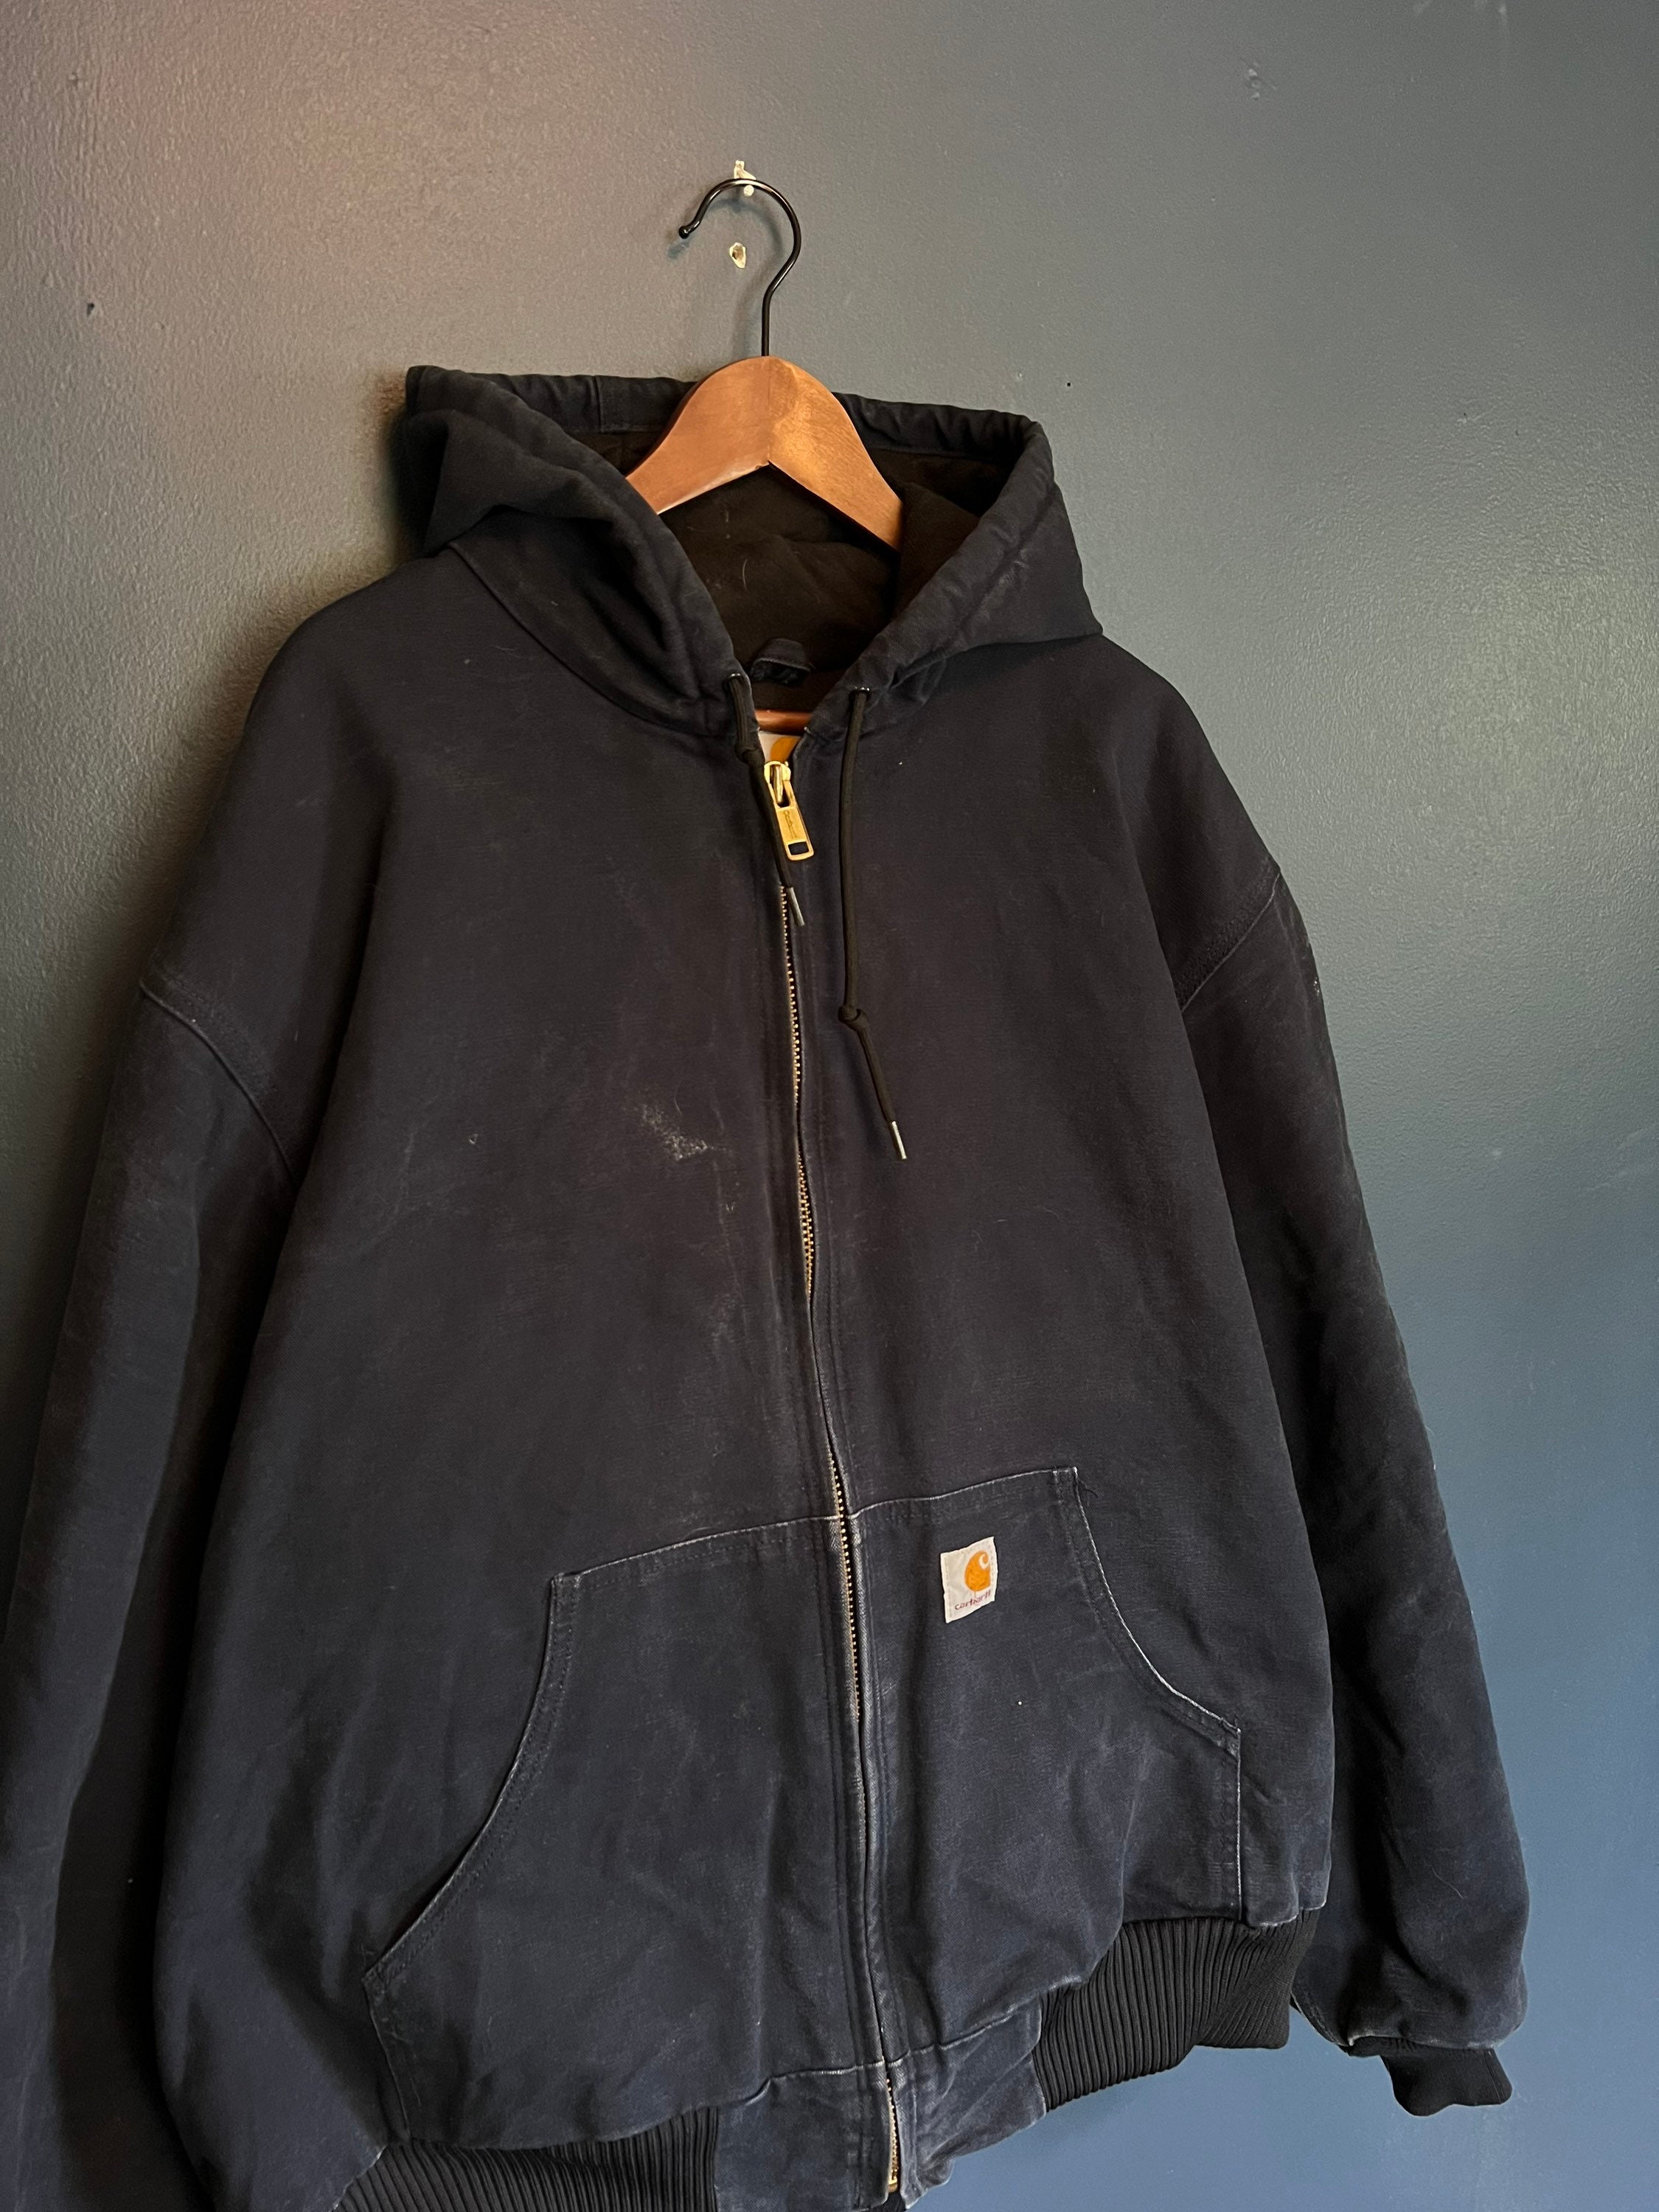 Vintage s Carhartt Navy Canvas Zip Hooded Jacket Size 2XL   Etsy